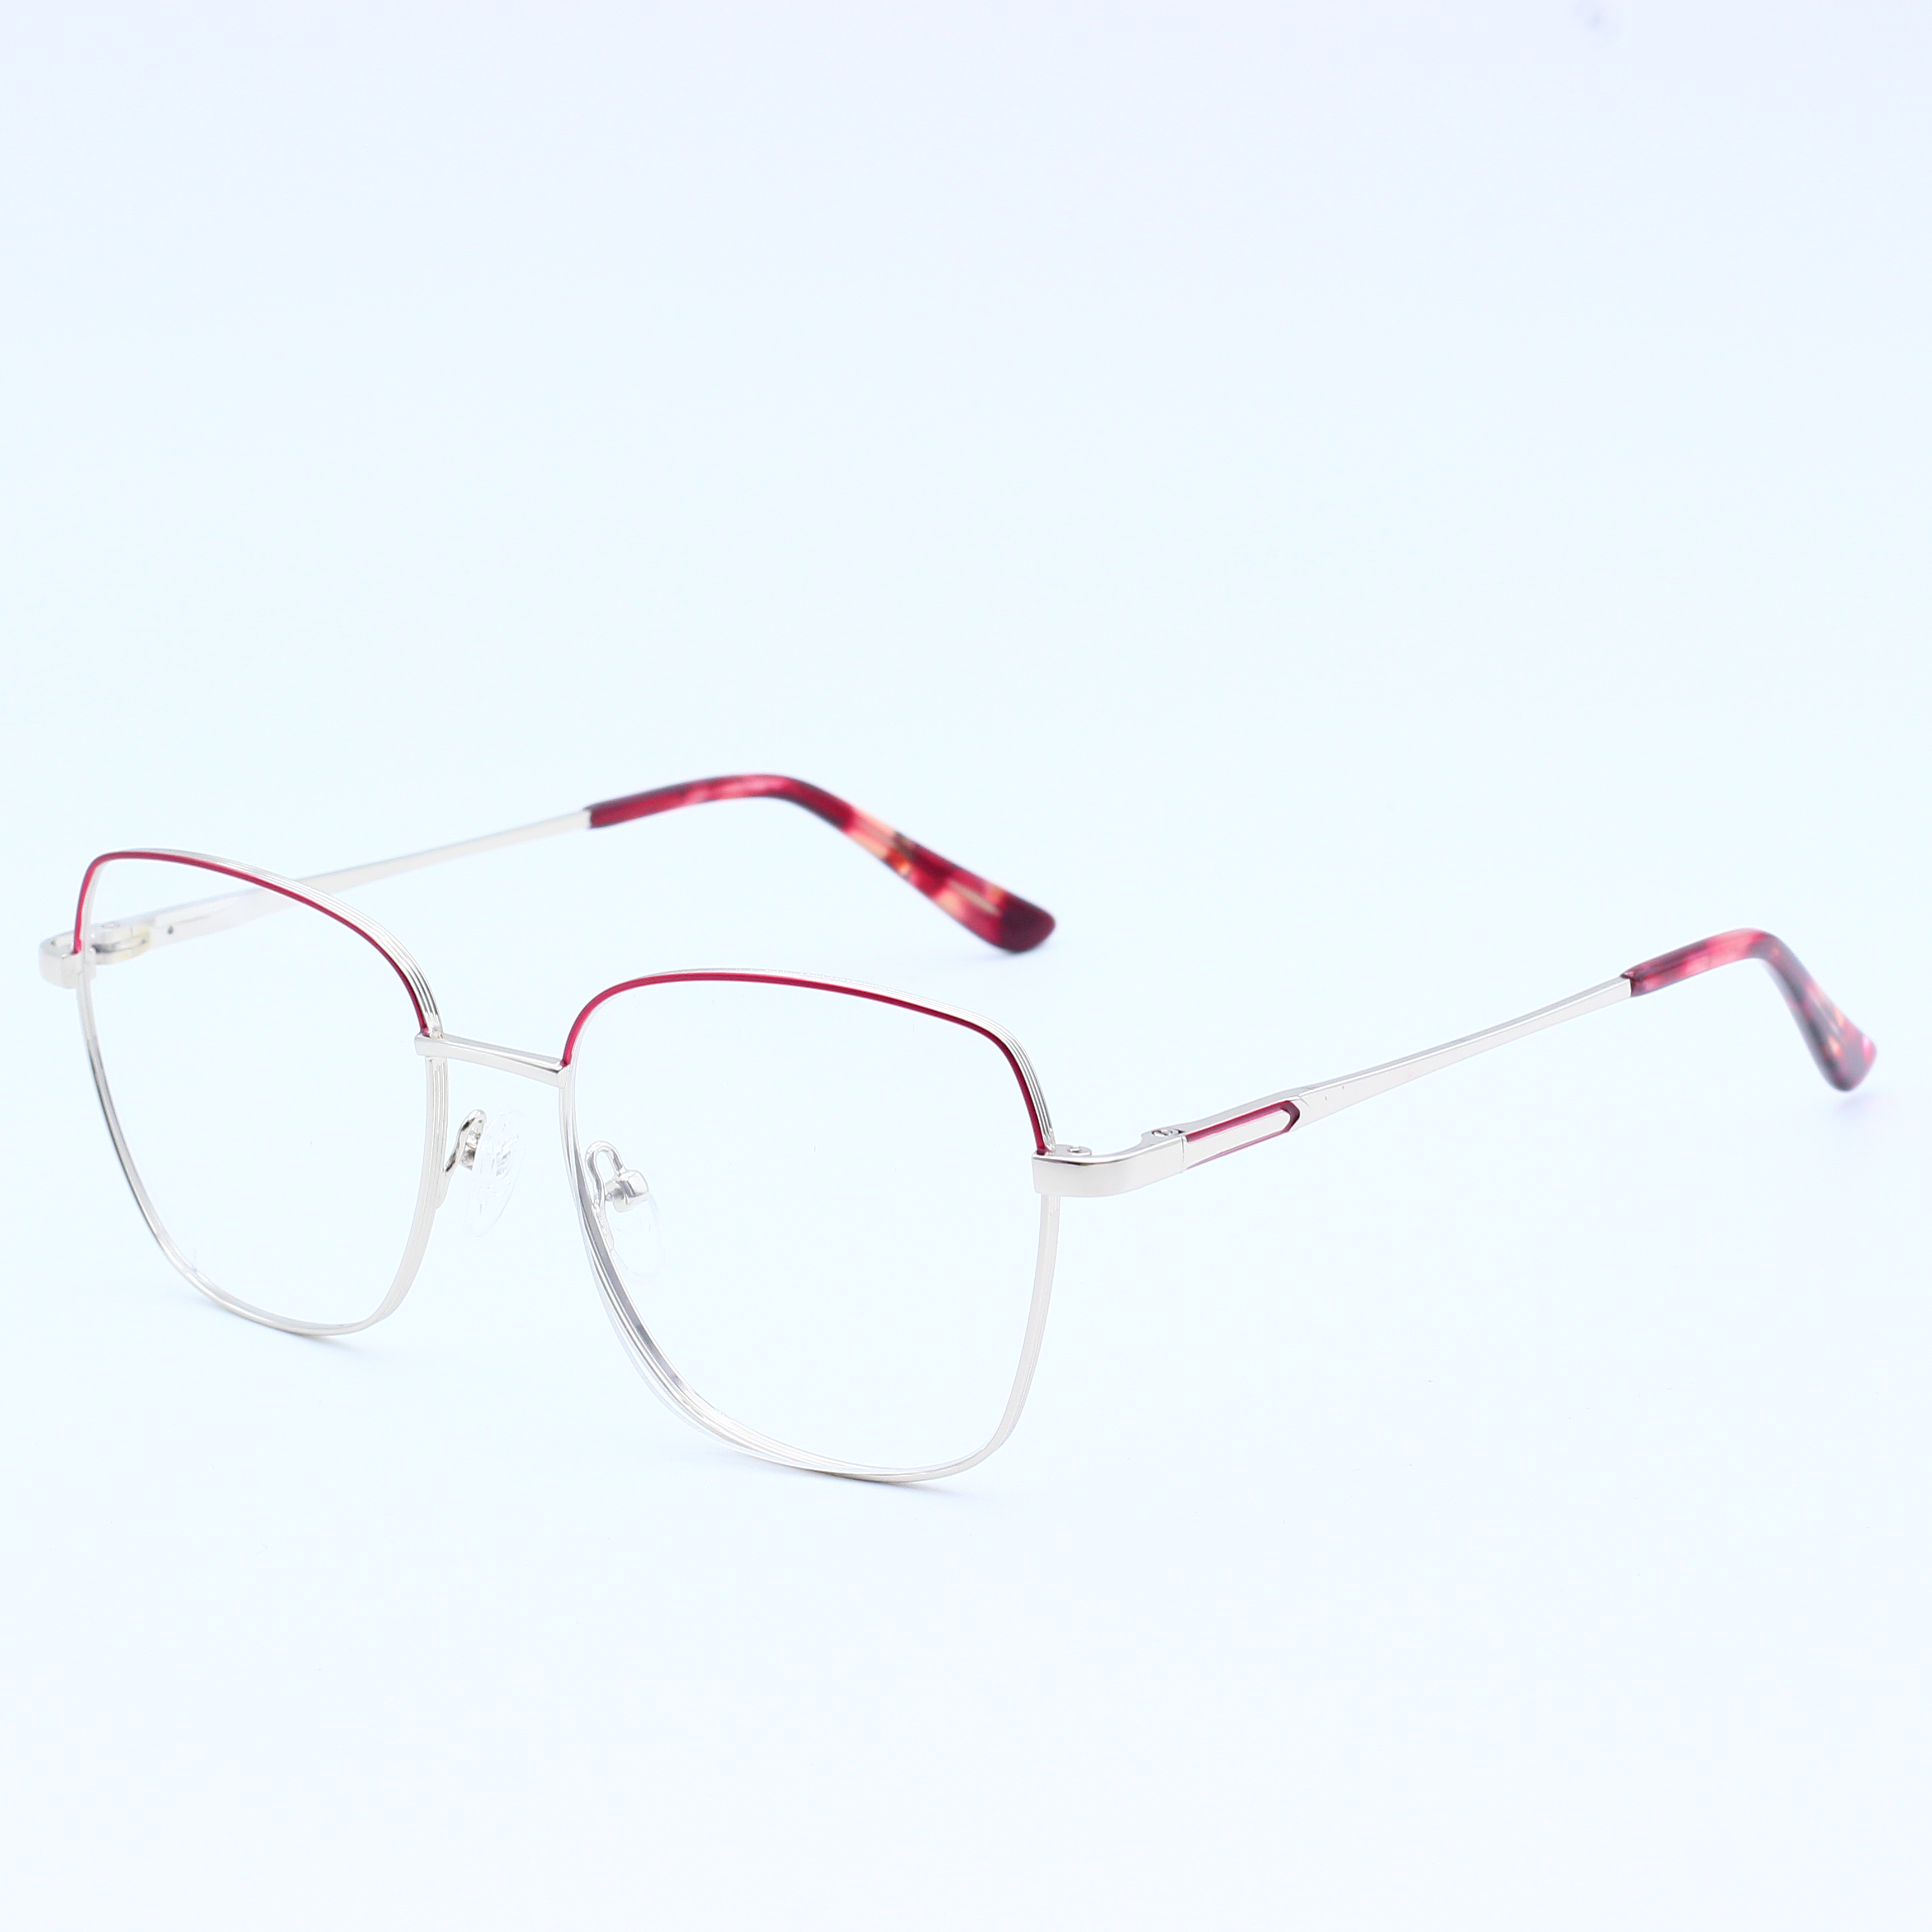 Best selling combine metal eyeglasses frames (8)